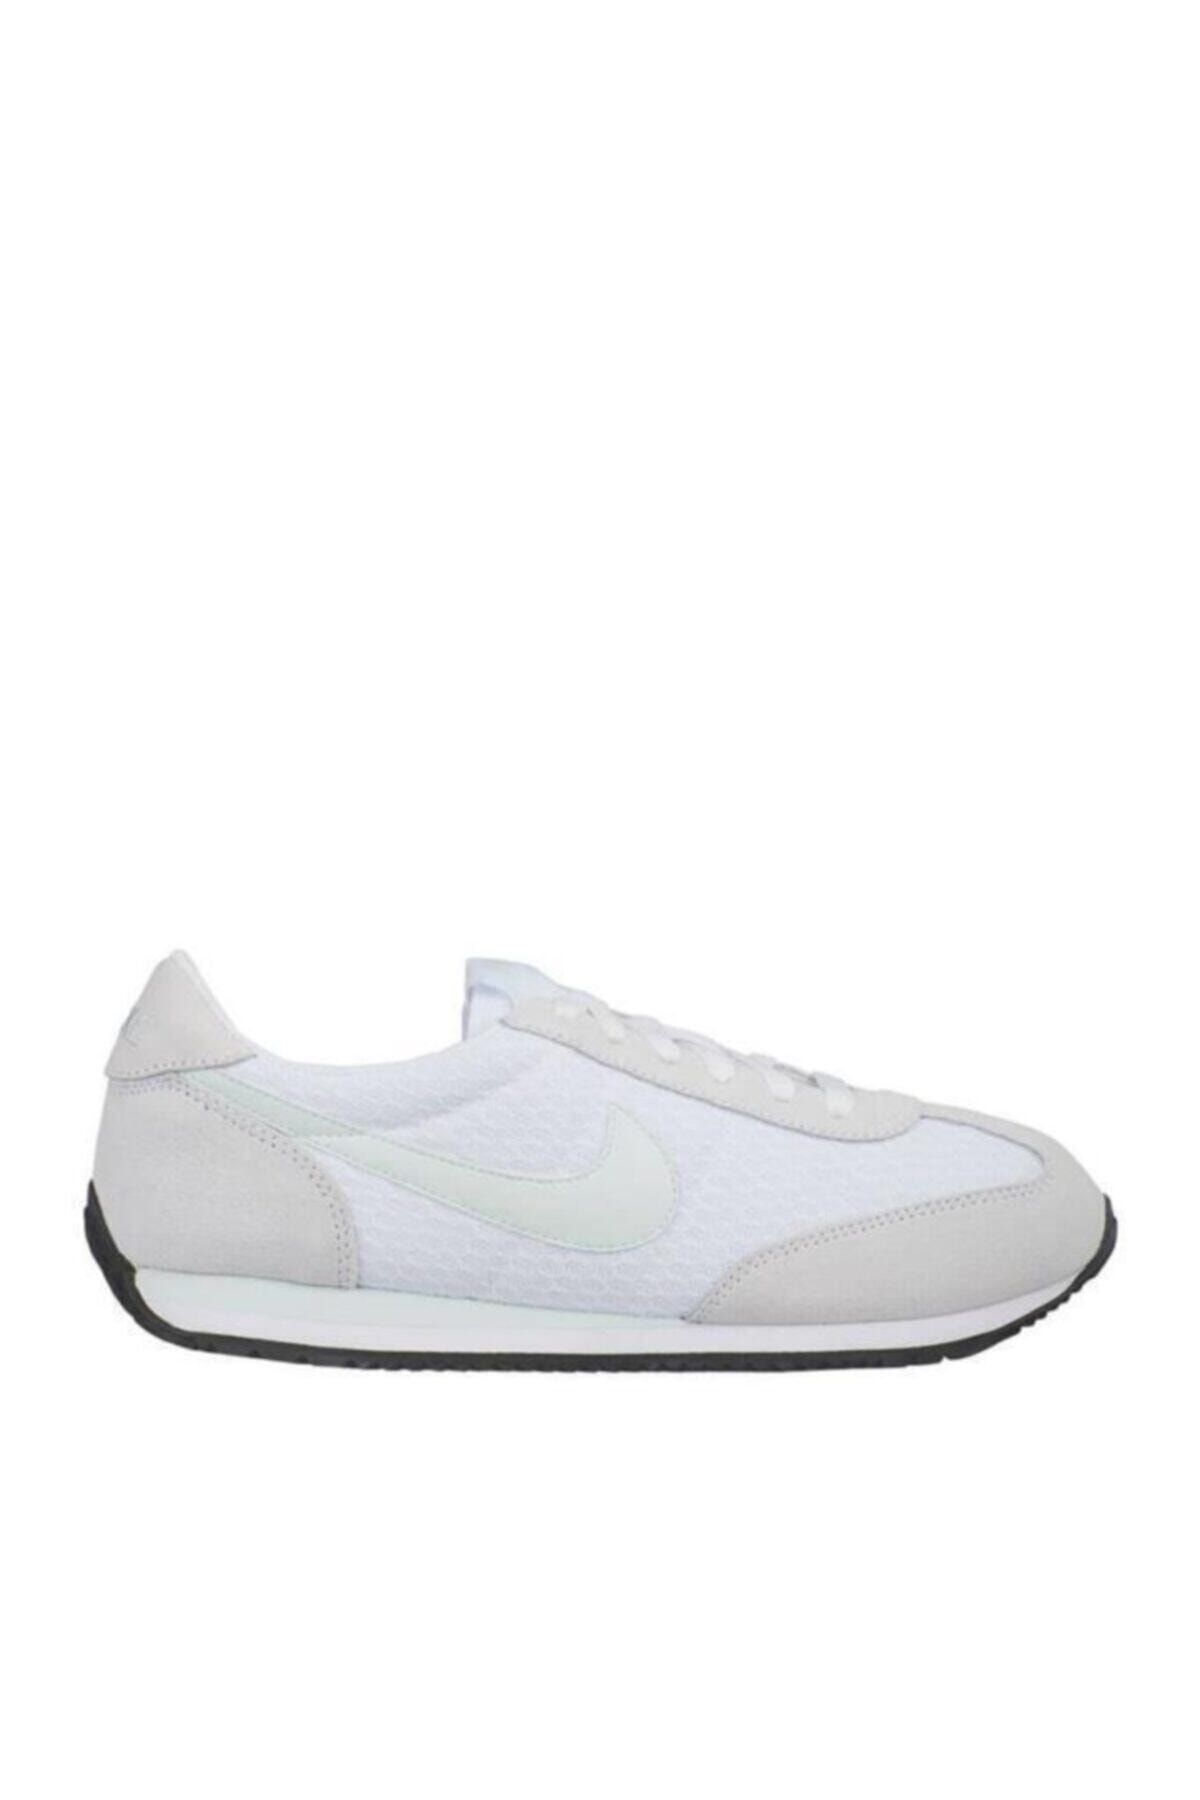 Nike Kadın Beyaz Spor Ayakkabısı 511880-103